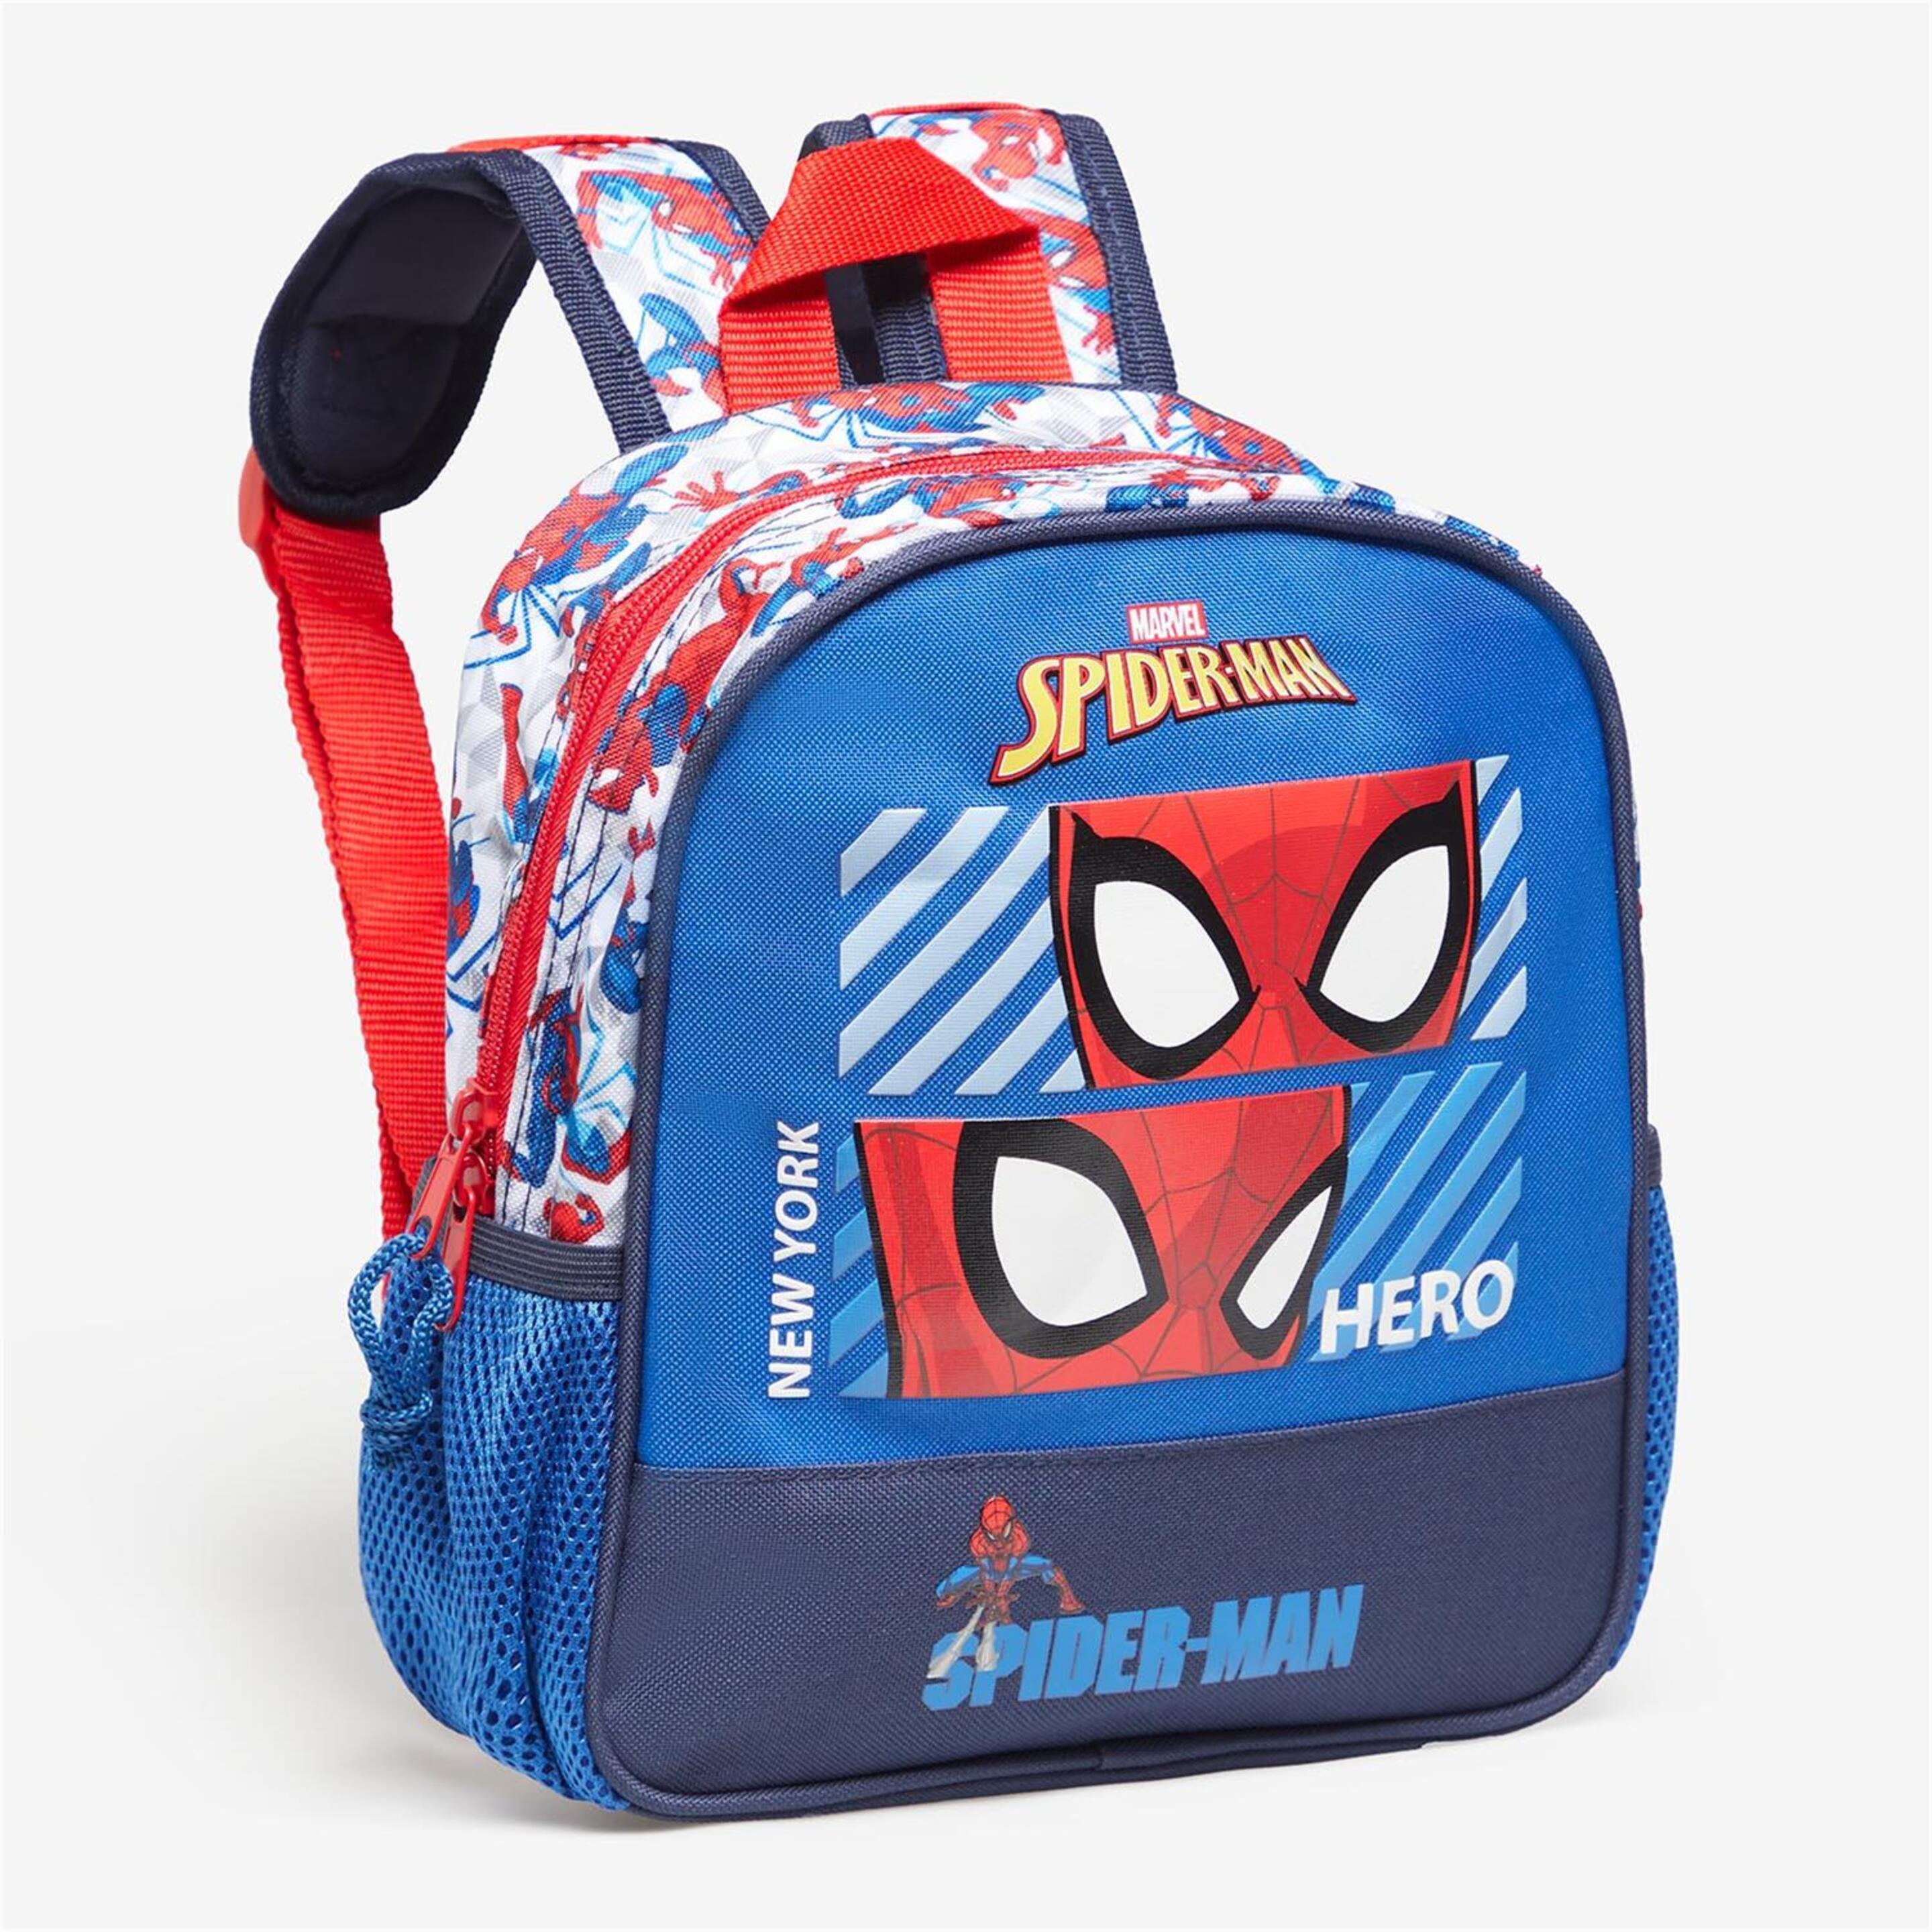 Spiderman Hero Minimchla - azul - 